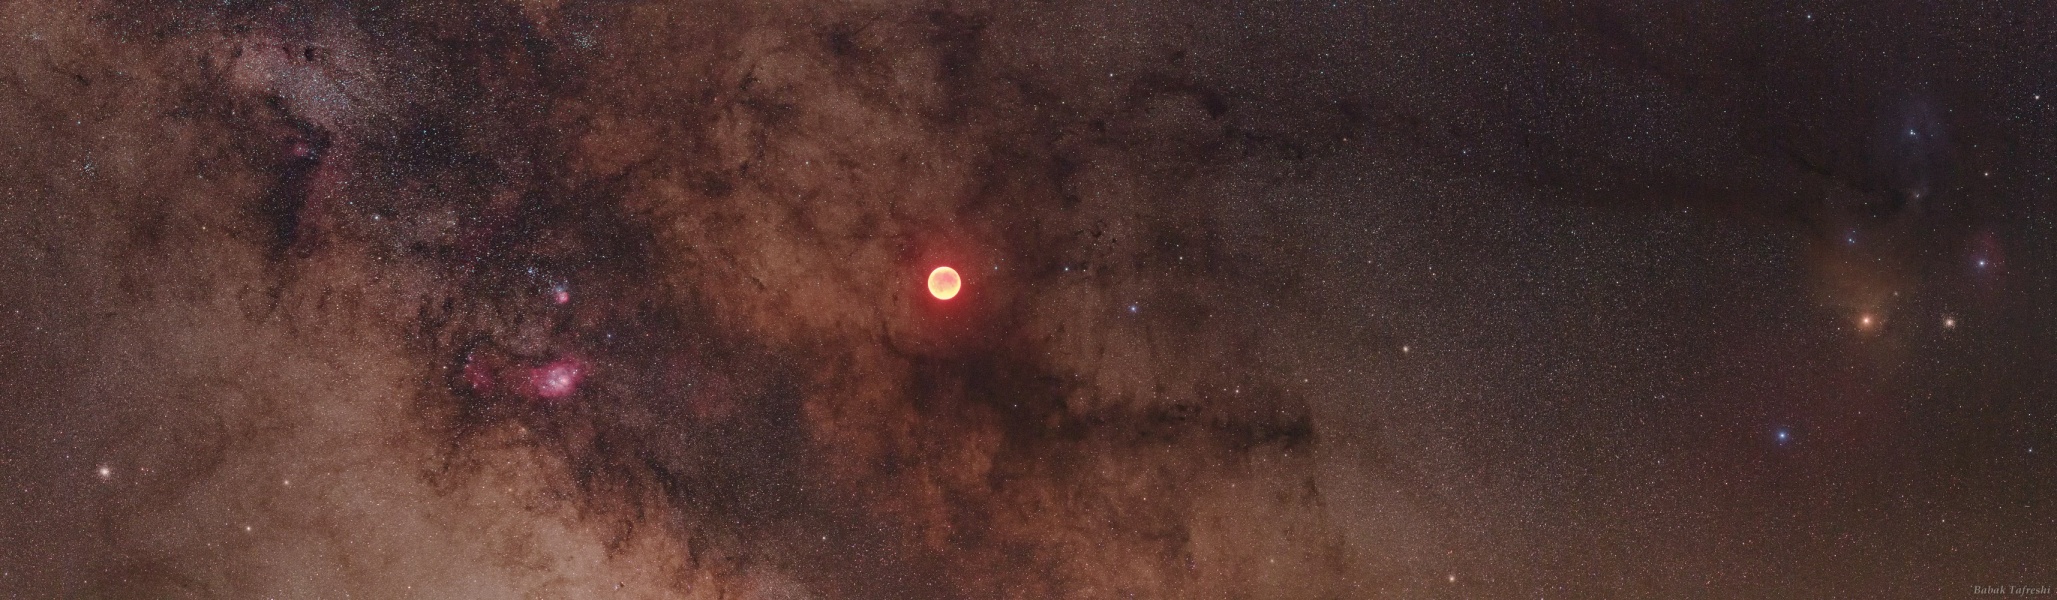 Am Himmel leuchtet zwischen Sternwolken und Dunkelnebeln der rote Mond bei einer totalen Mondfinsternis.